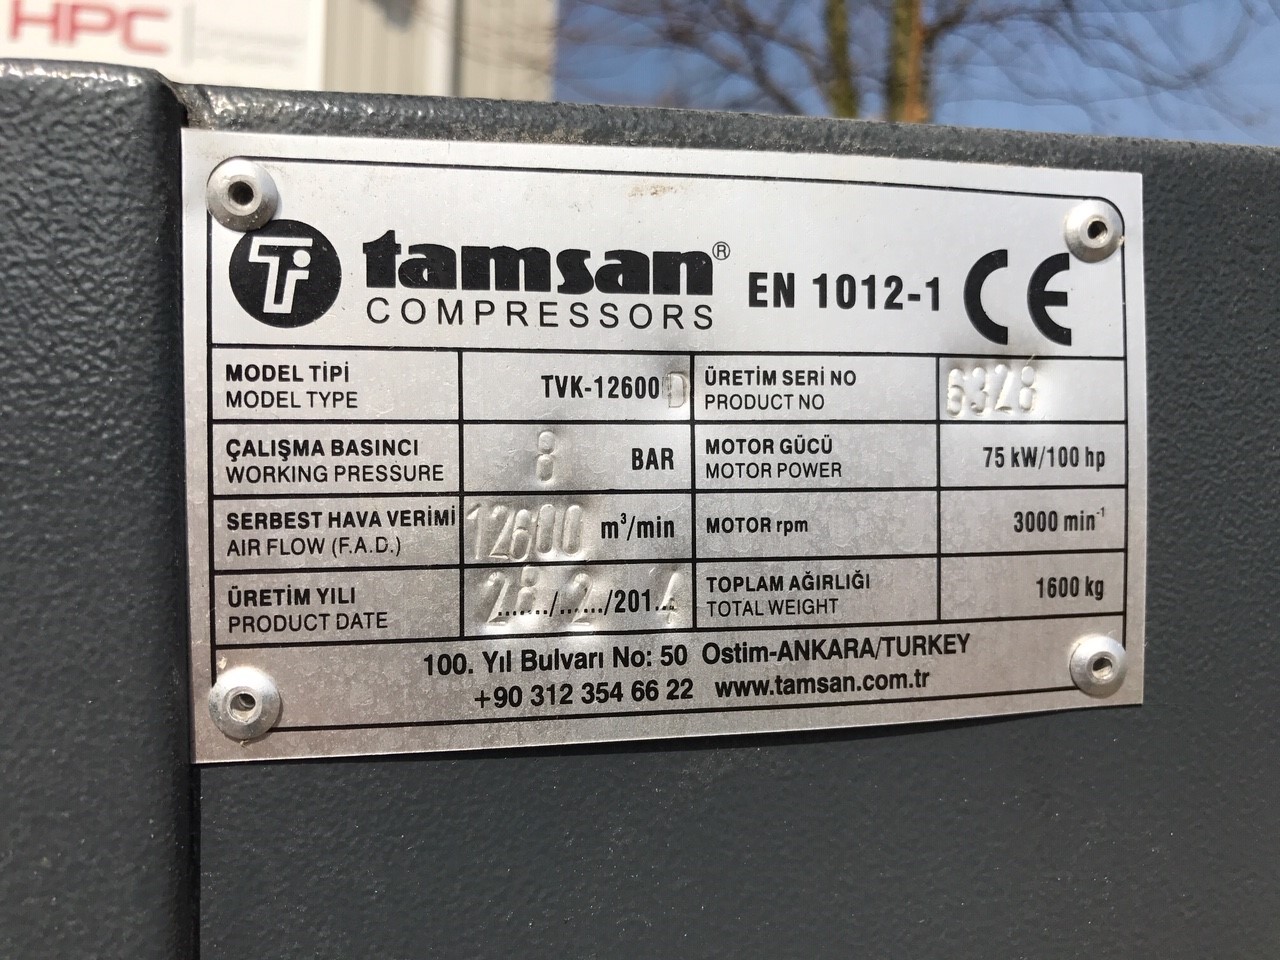 Tamsan, Plusair CSD 102, Plusair CSD 102 air compressor, air compressor, used air compressor, used air compressor machines